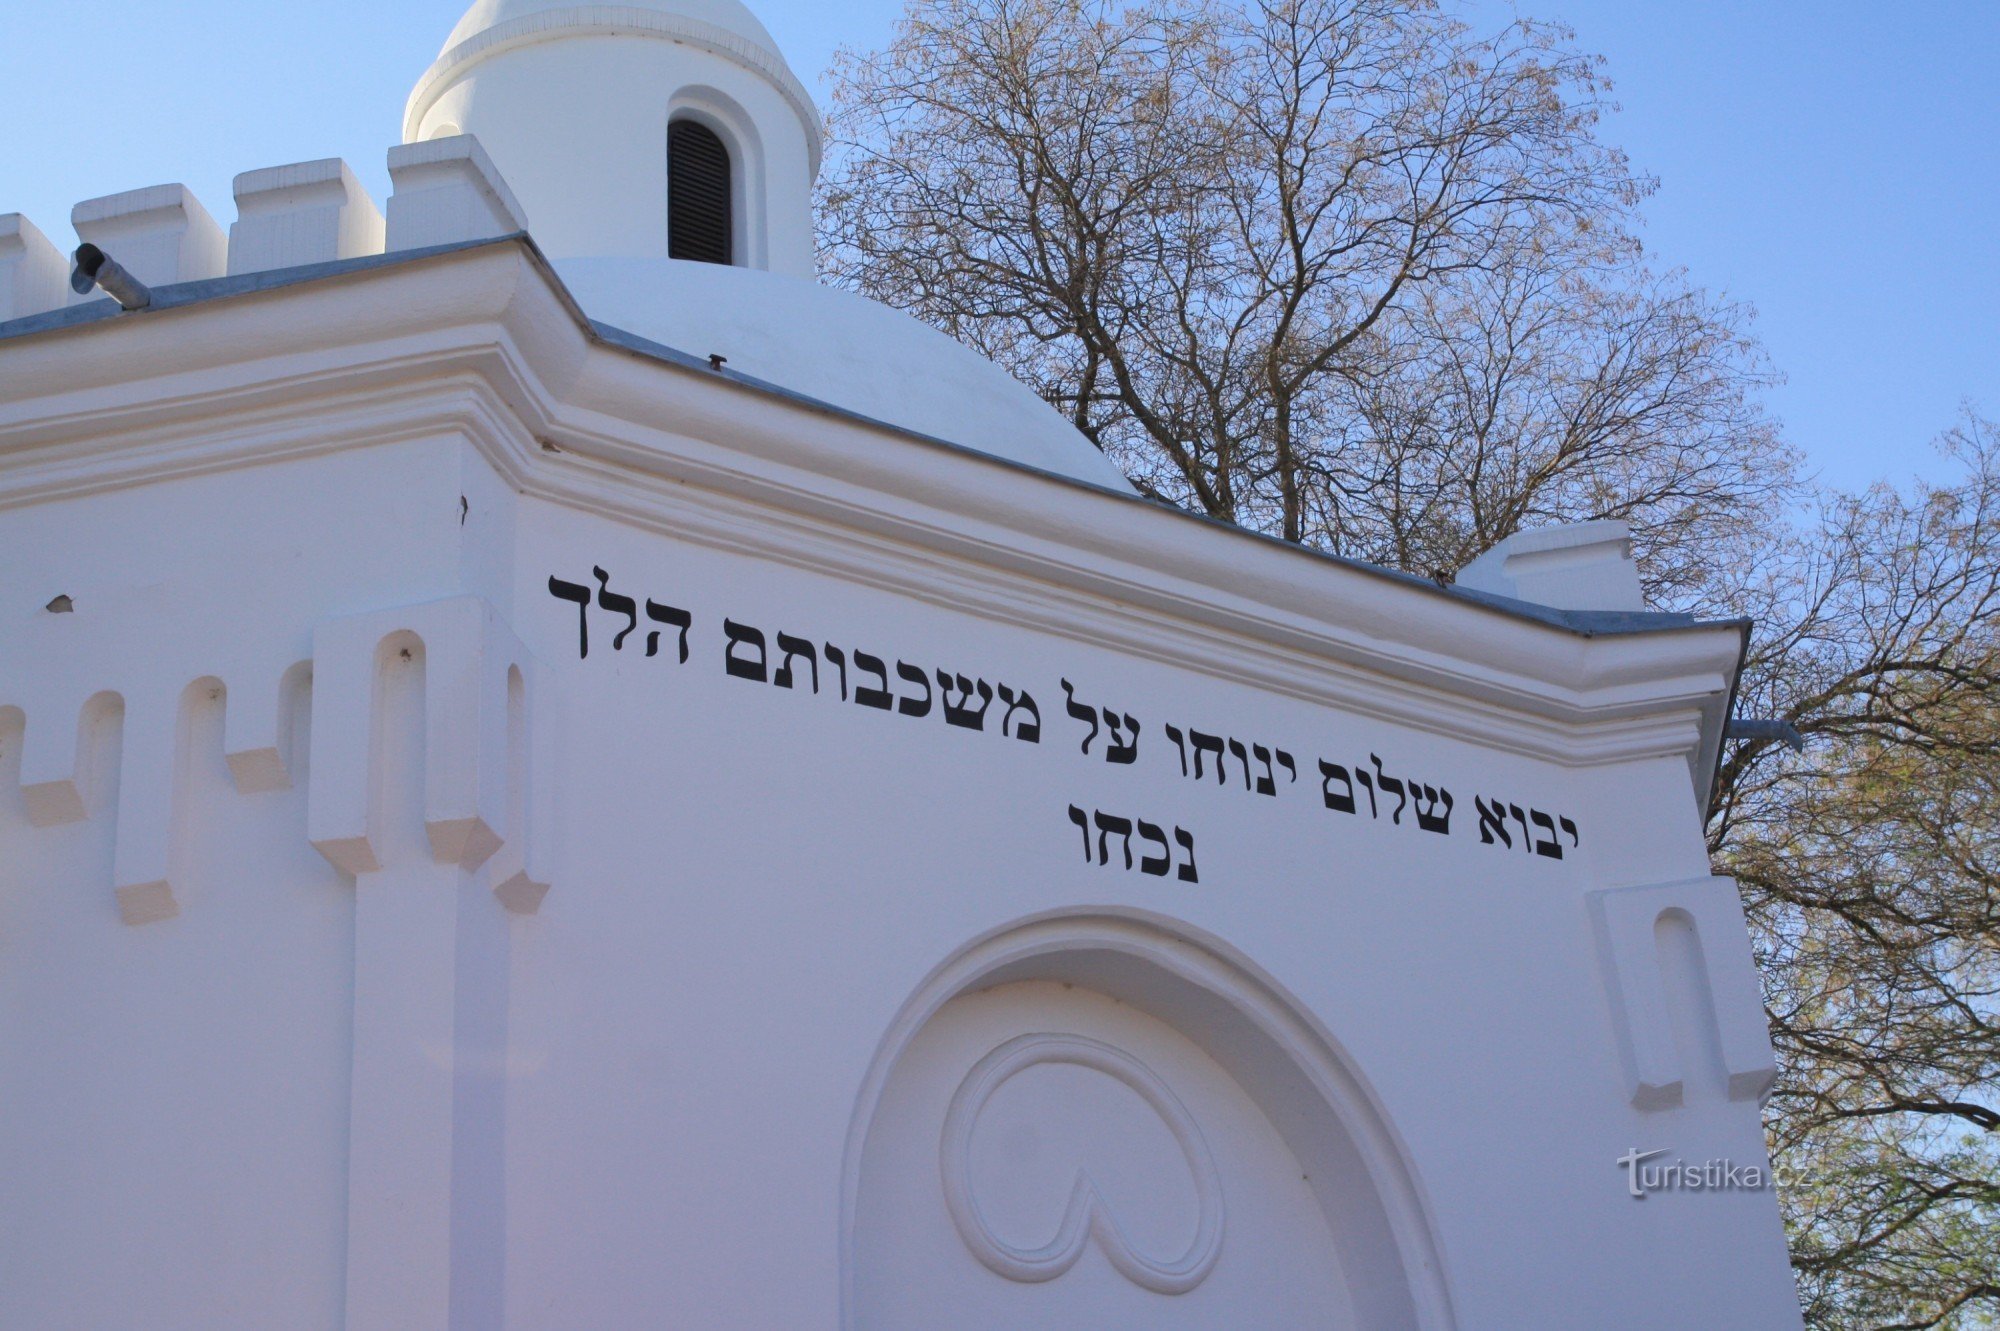 Detalhe da sinagoga